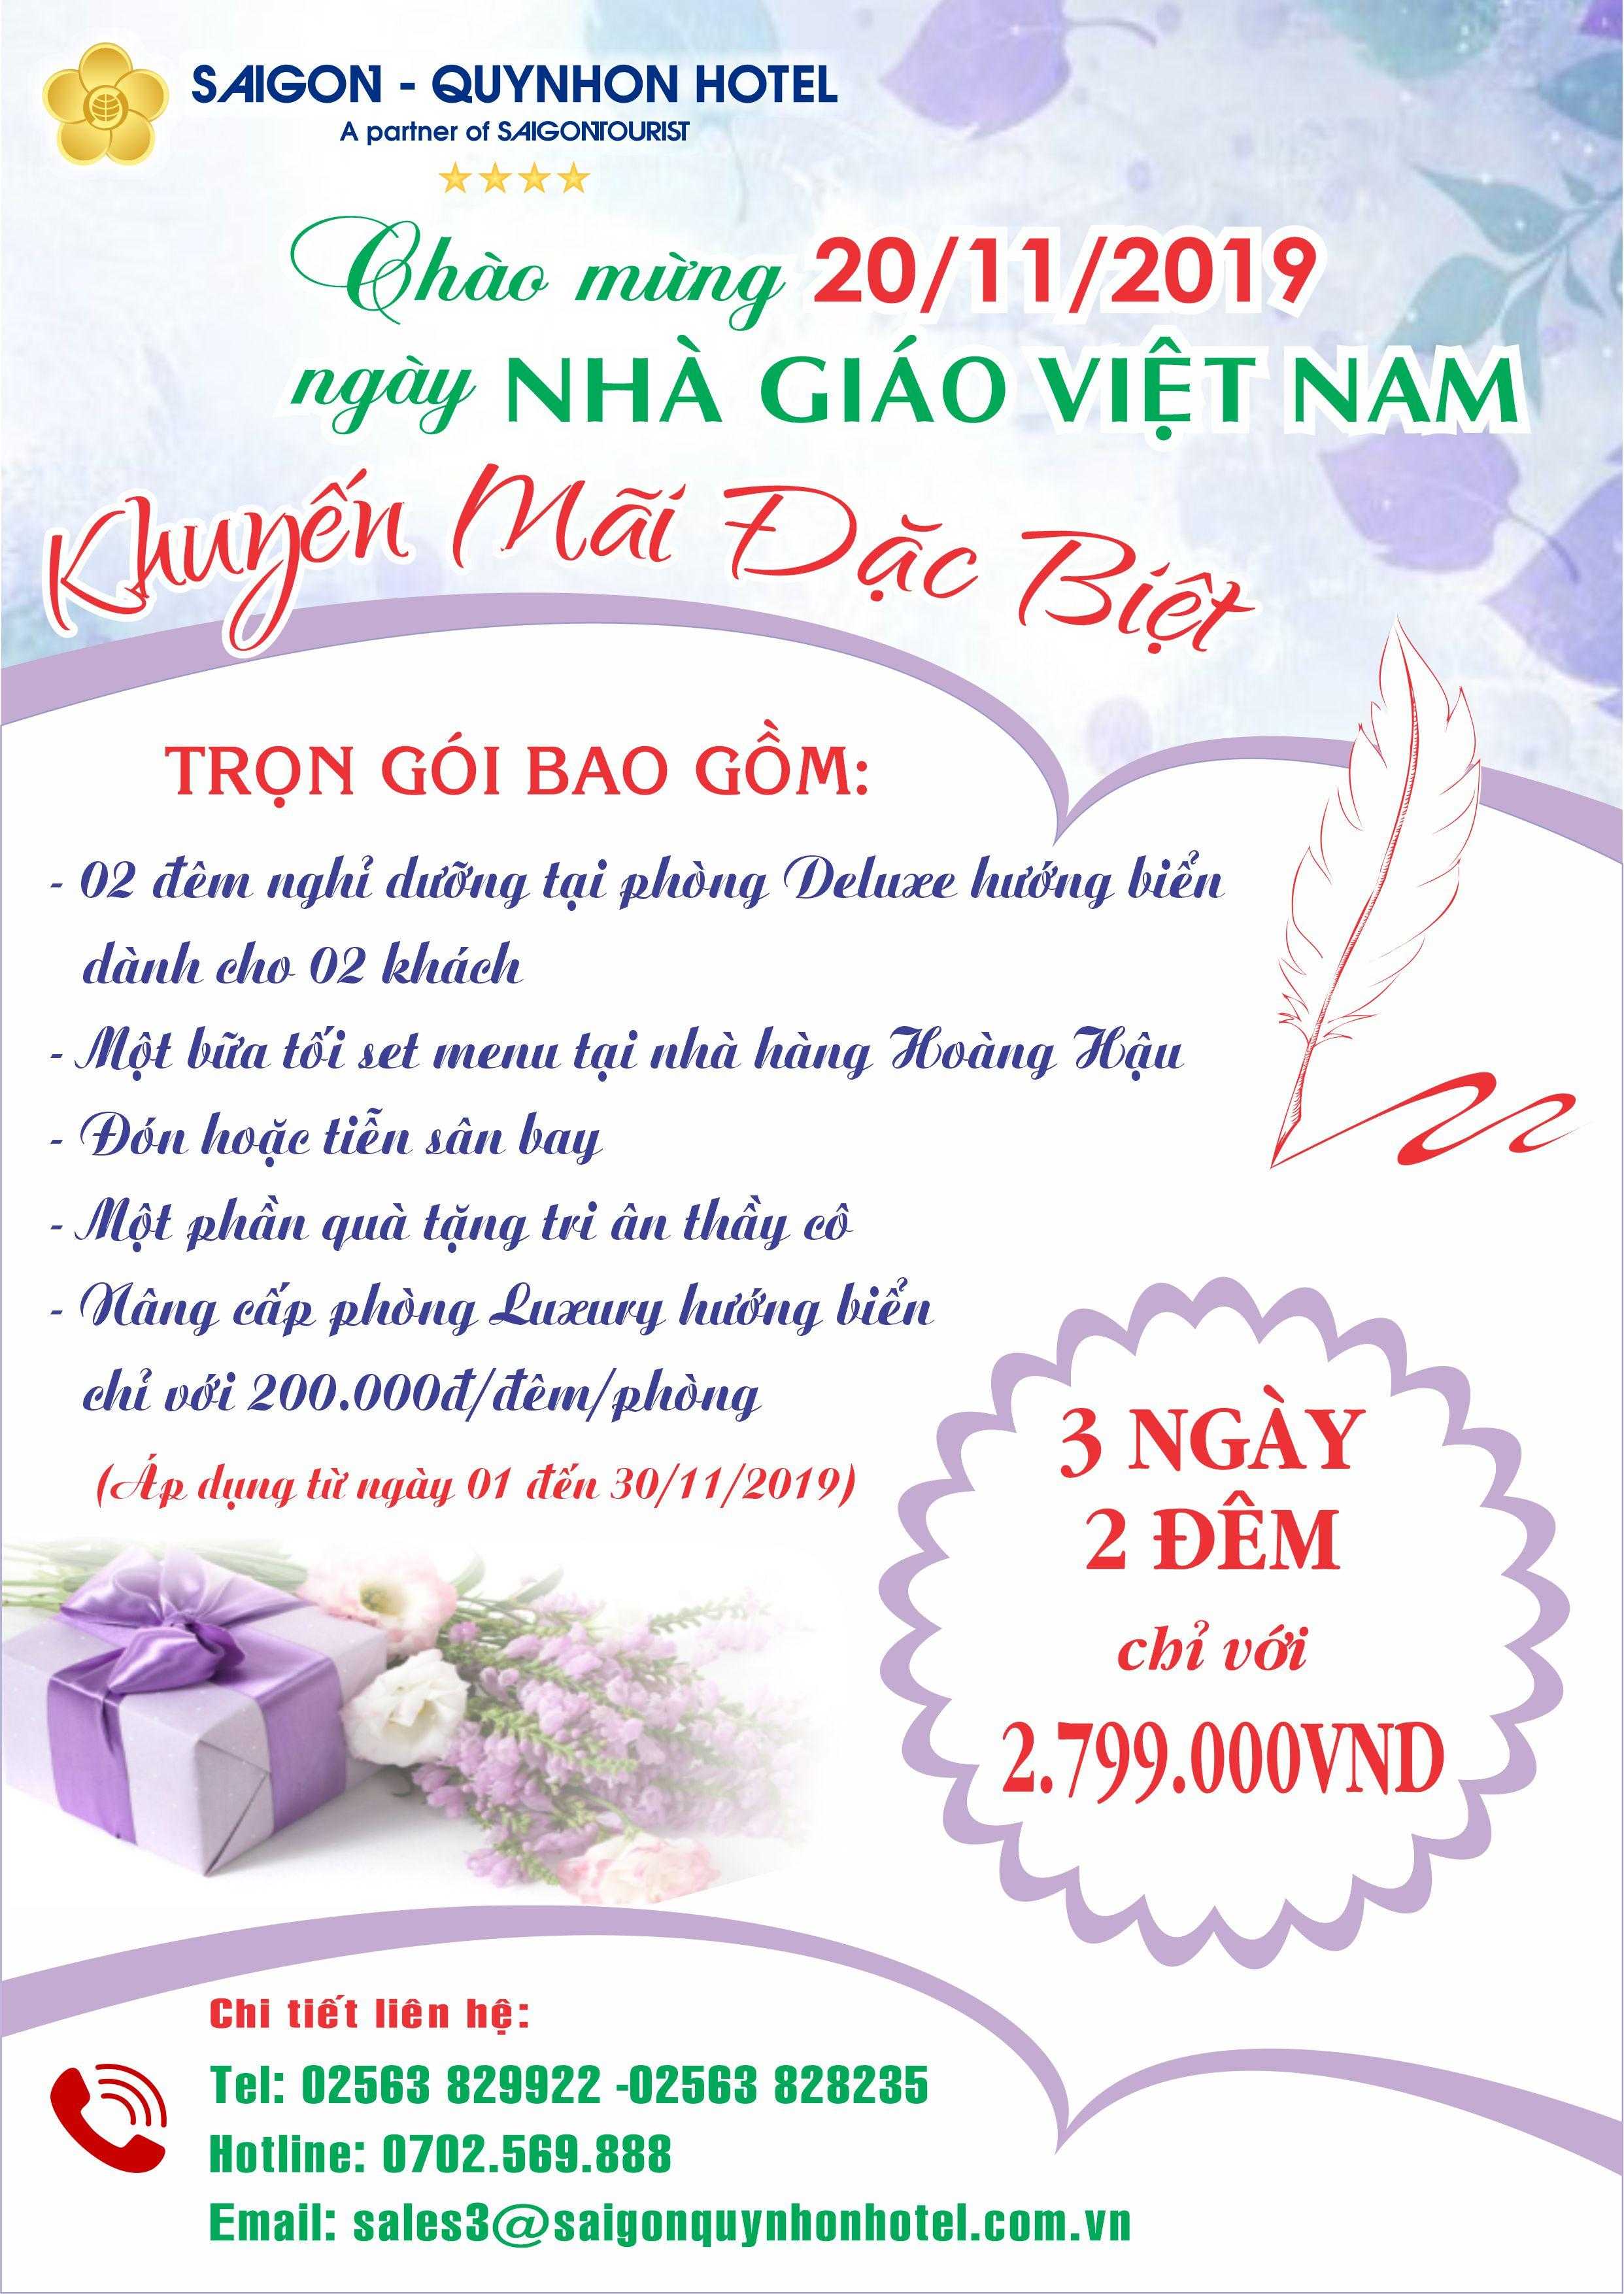 (Tiếng Việt) CHÀO MỪNG NGÀY NHÀ GIÁO VIỆT NAM 20/11